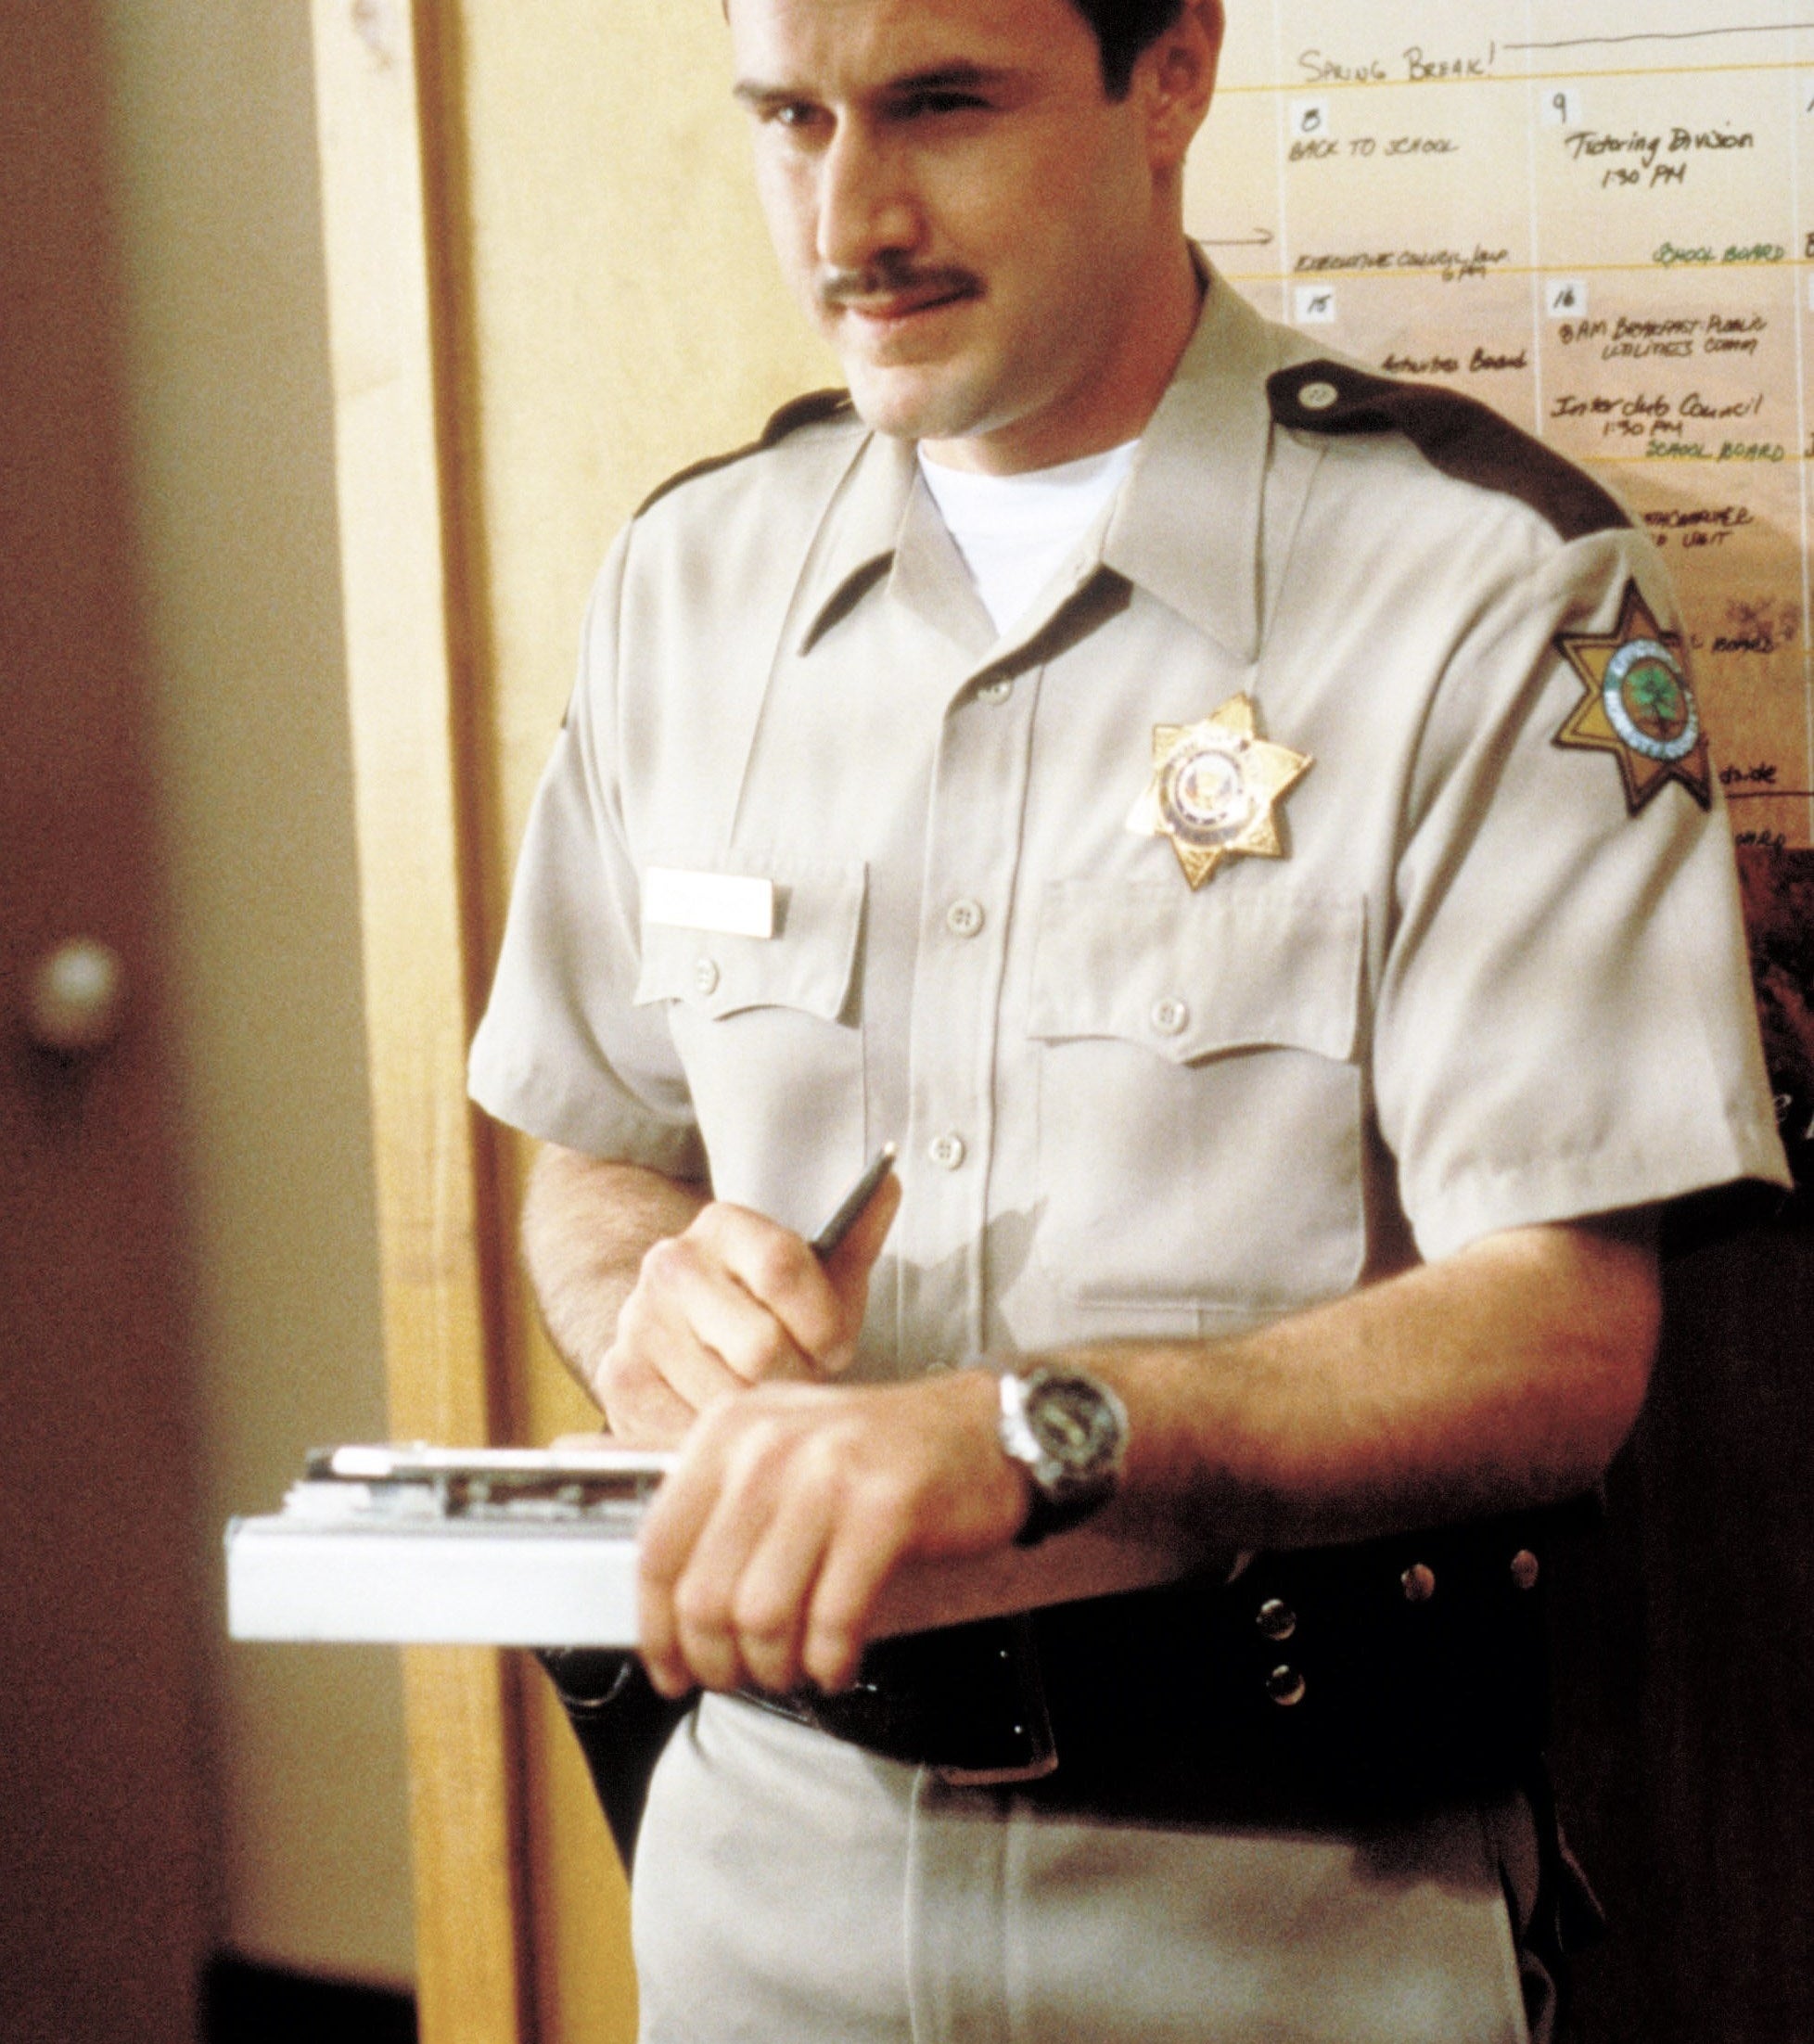 Deputy Dewey in uniform standing in the sheriff&#x27;s office